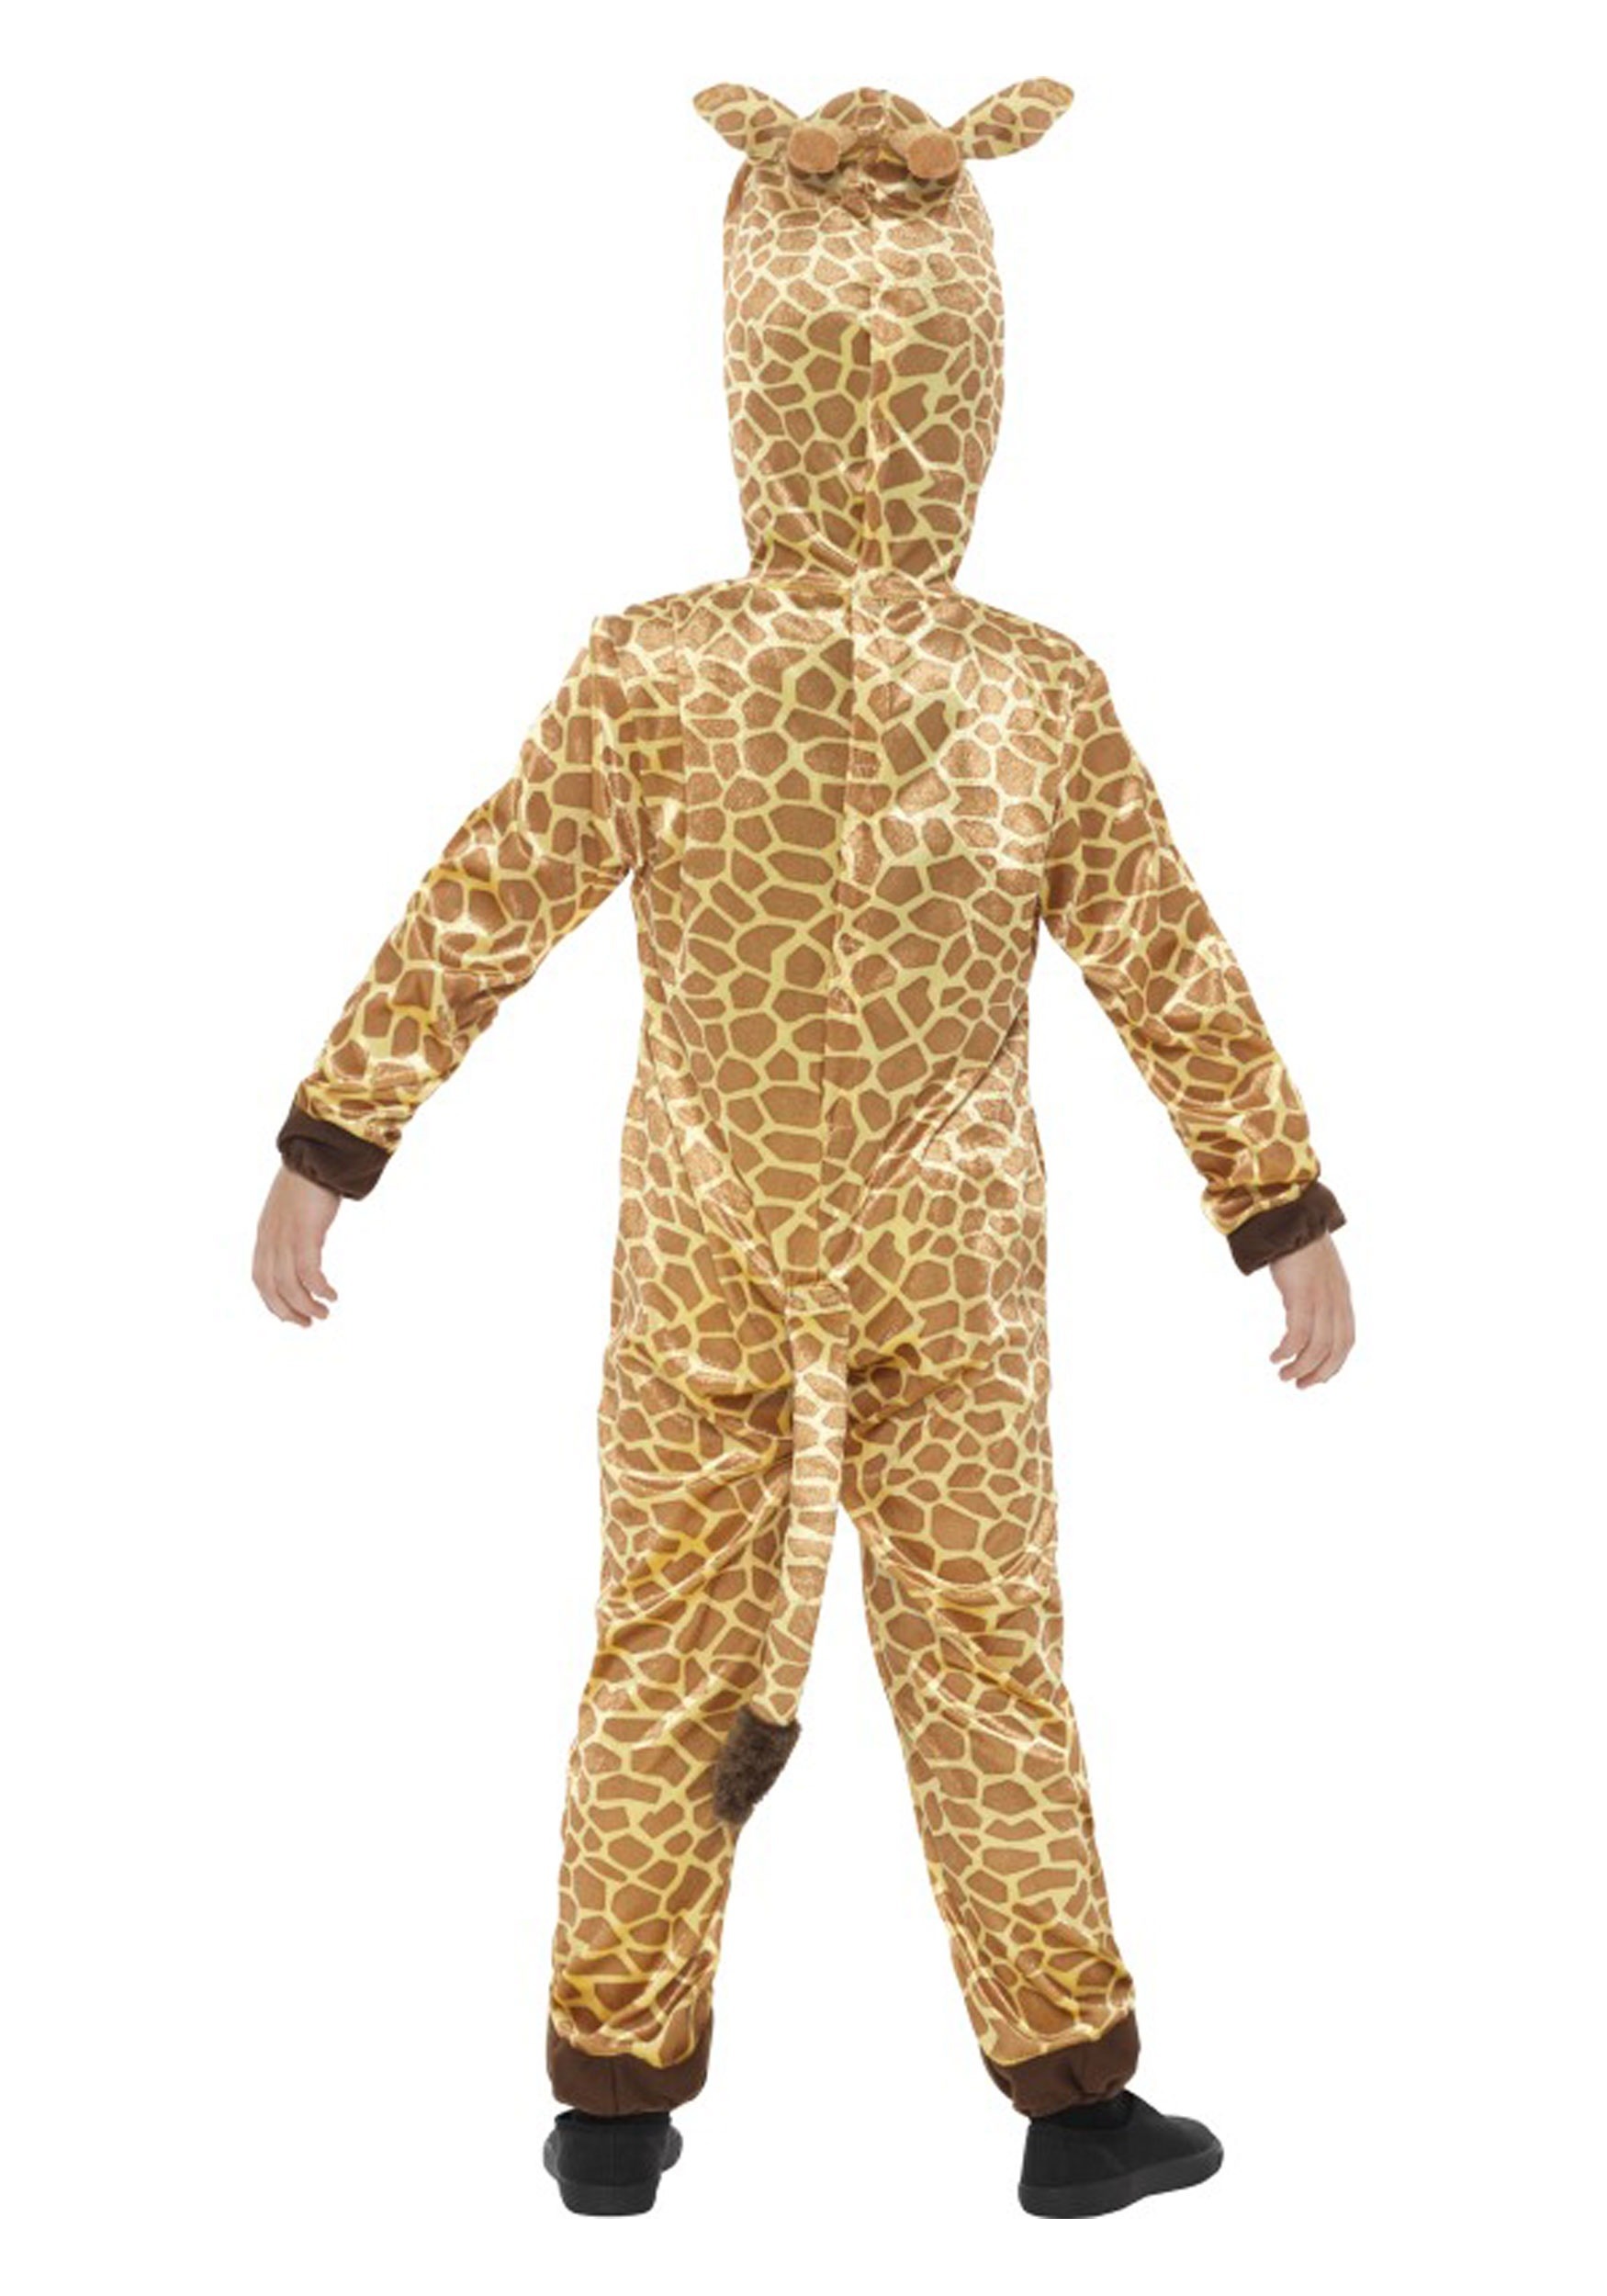 Giraffe Kid's Costume